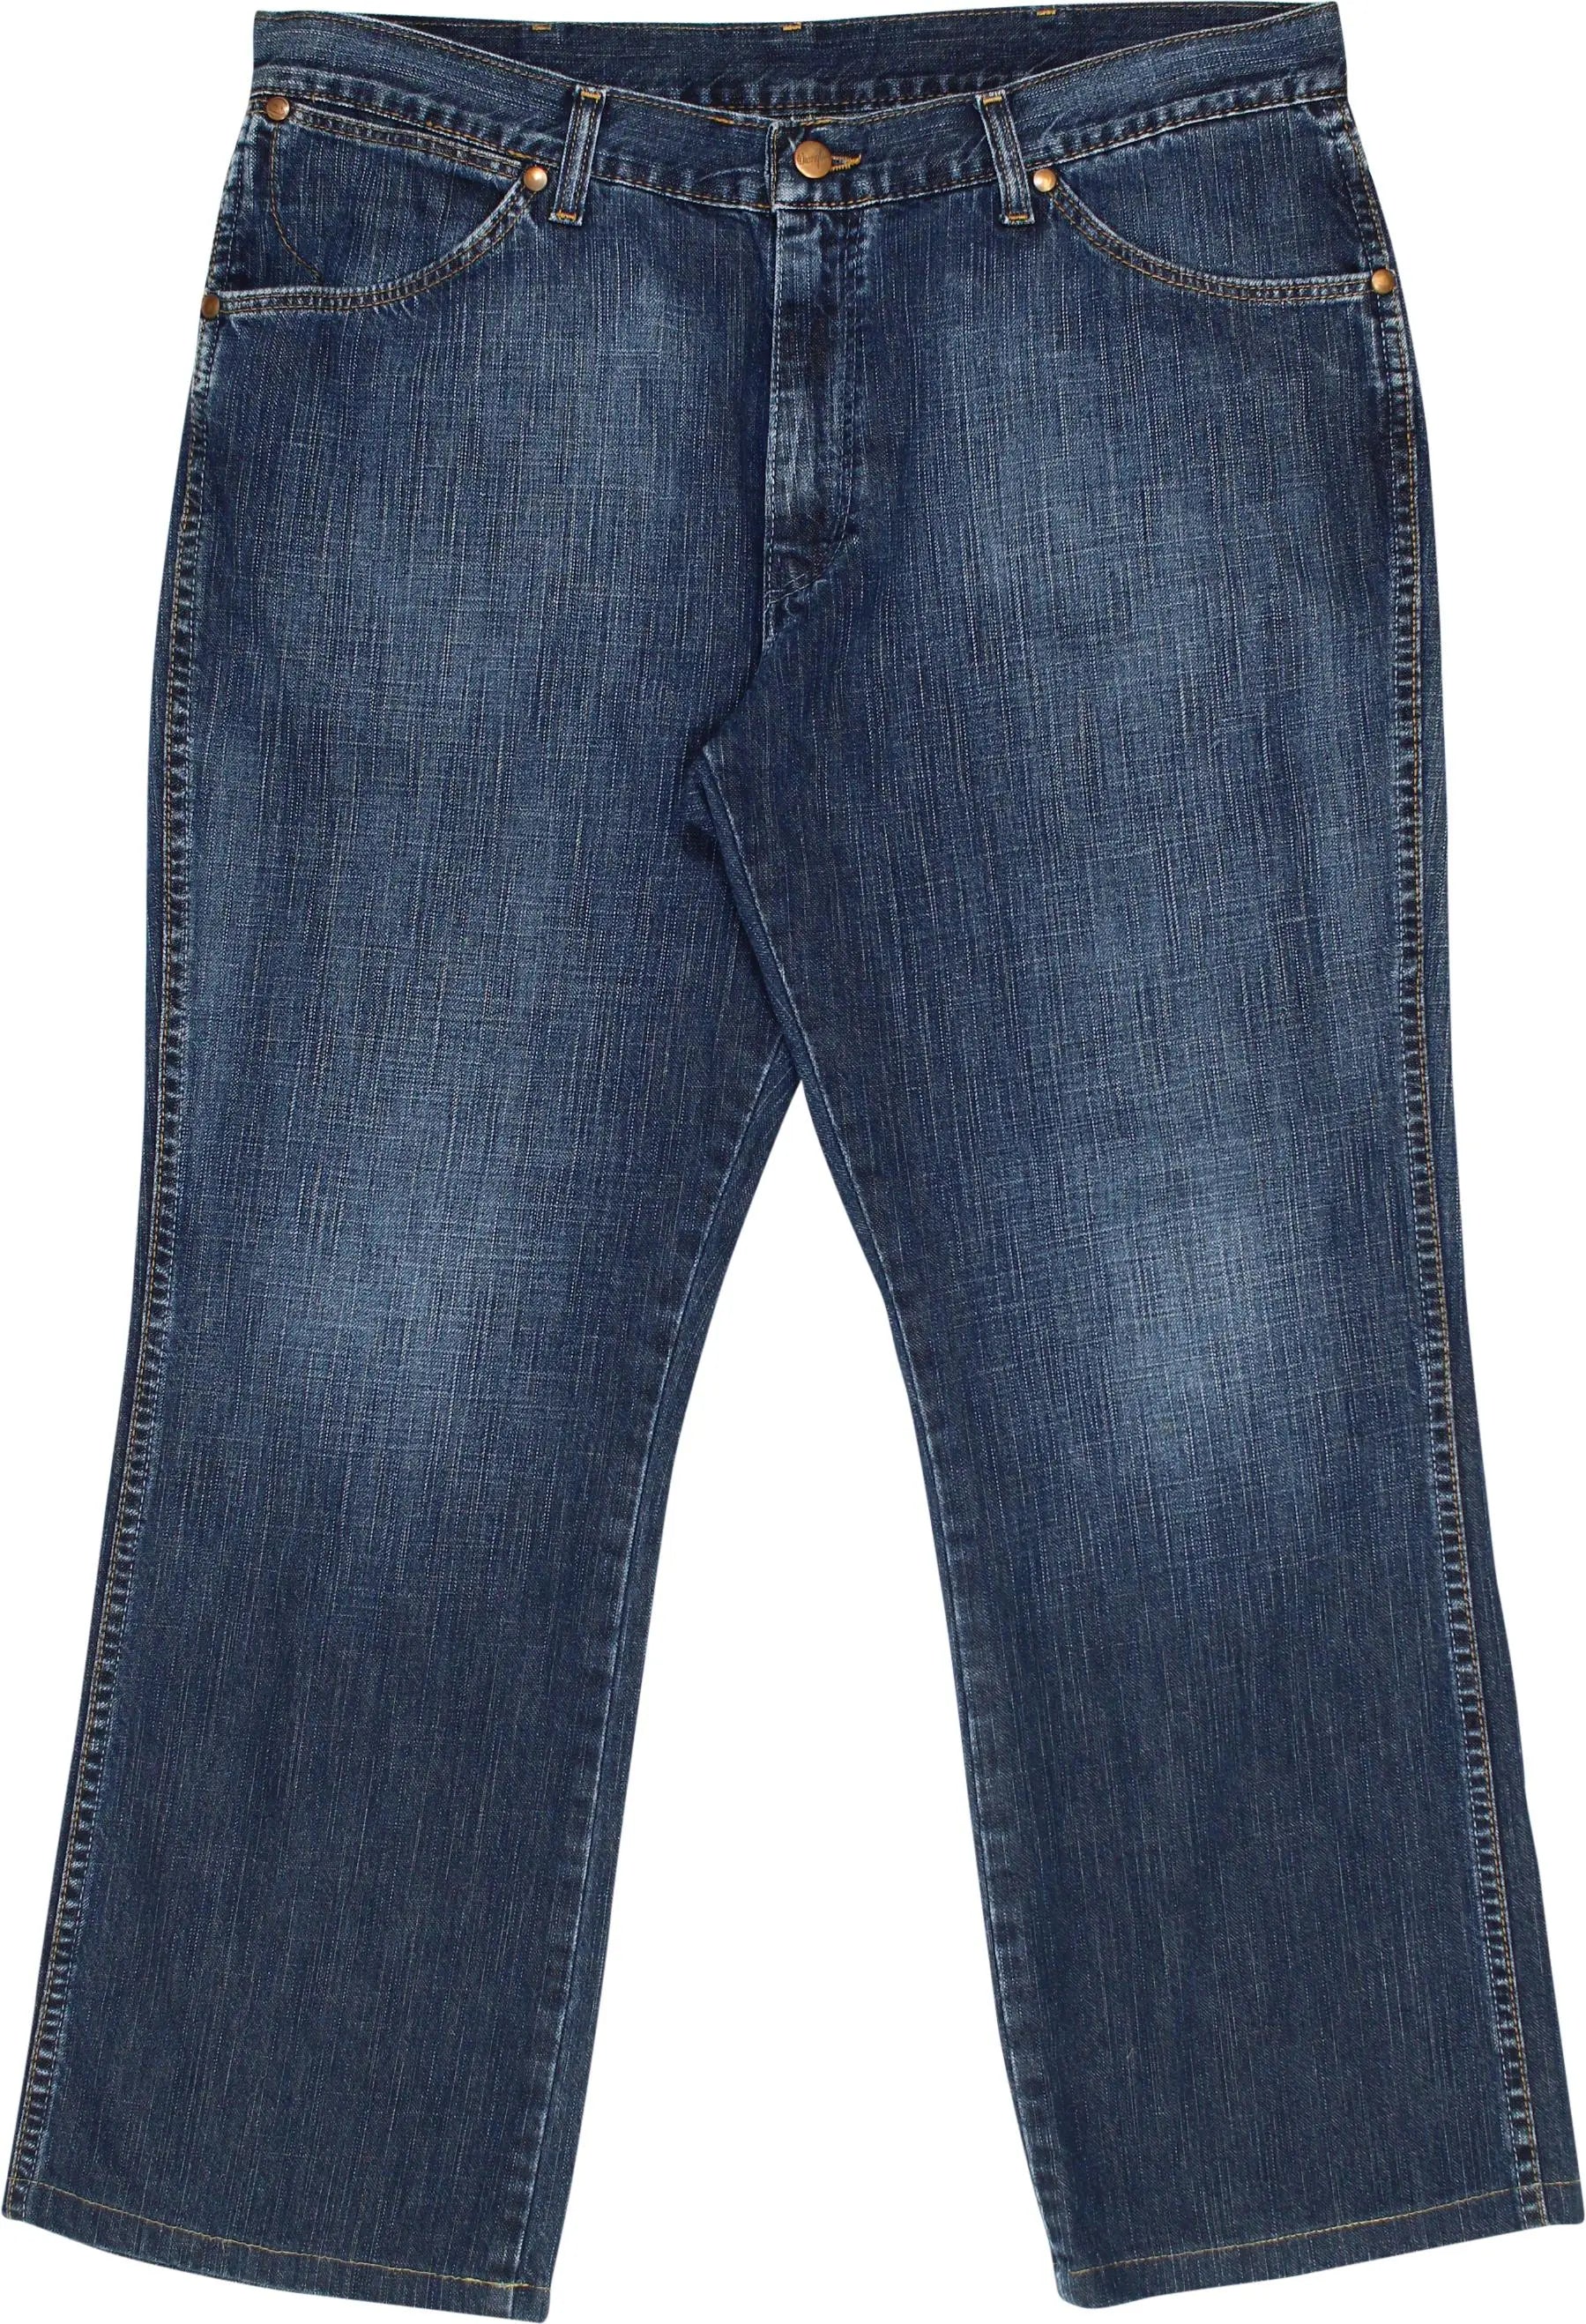 Wrangler - Wrangler Alaska Regular Fit Jeans- ThriftTale.com - Vintage and second handclothing